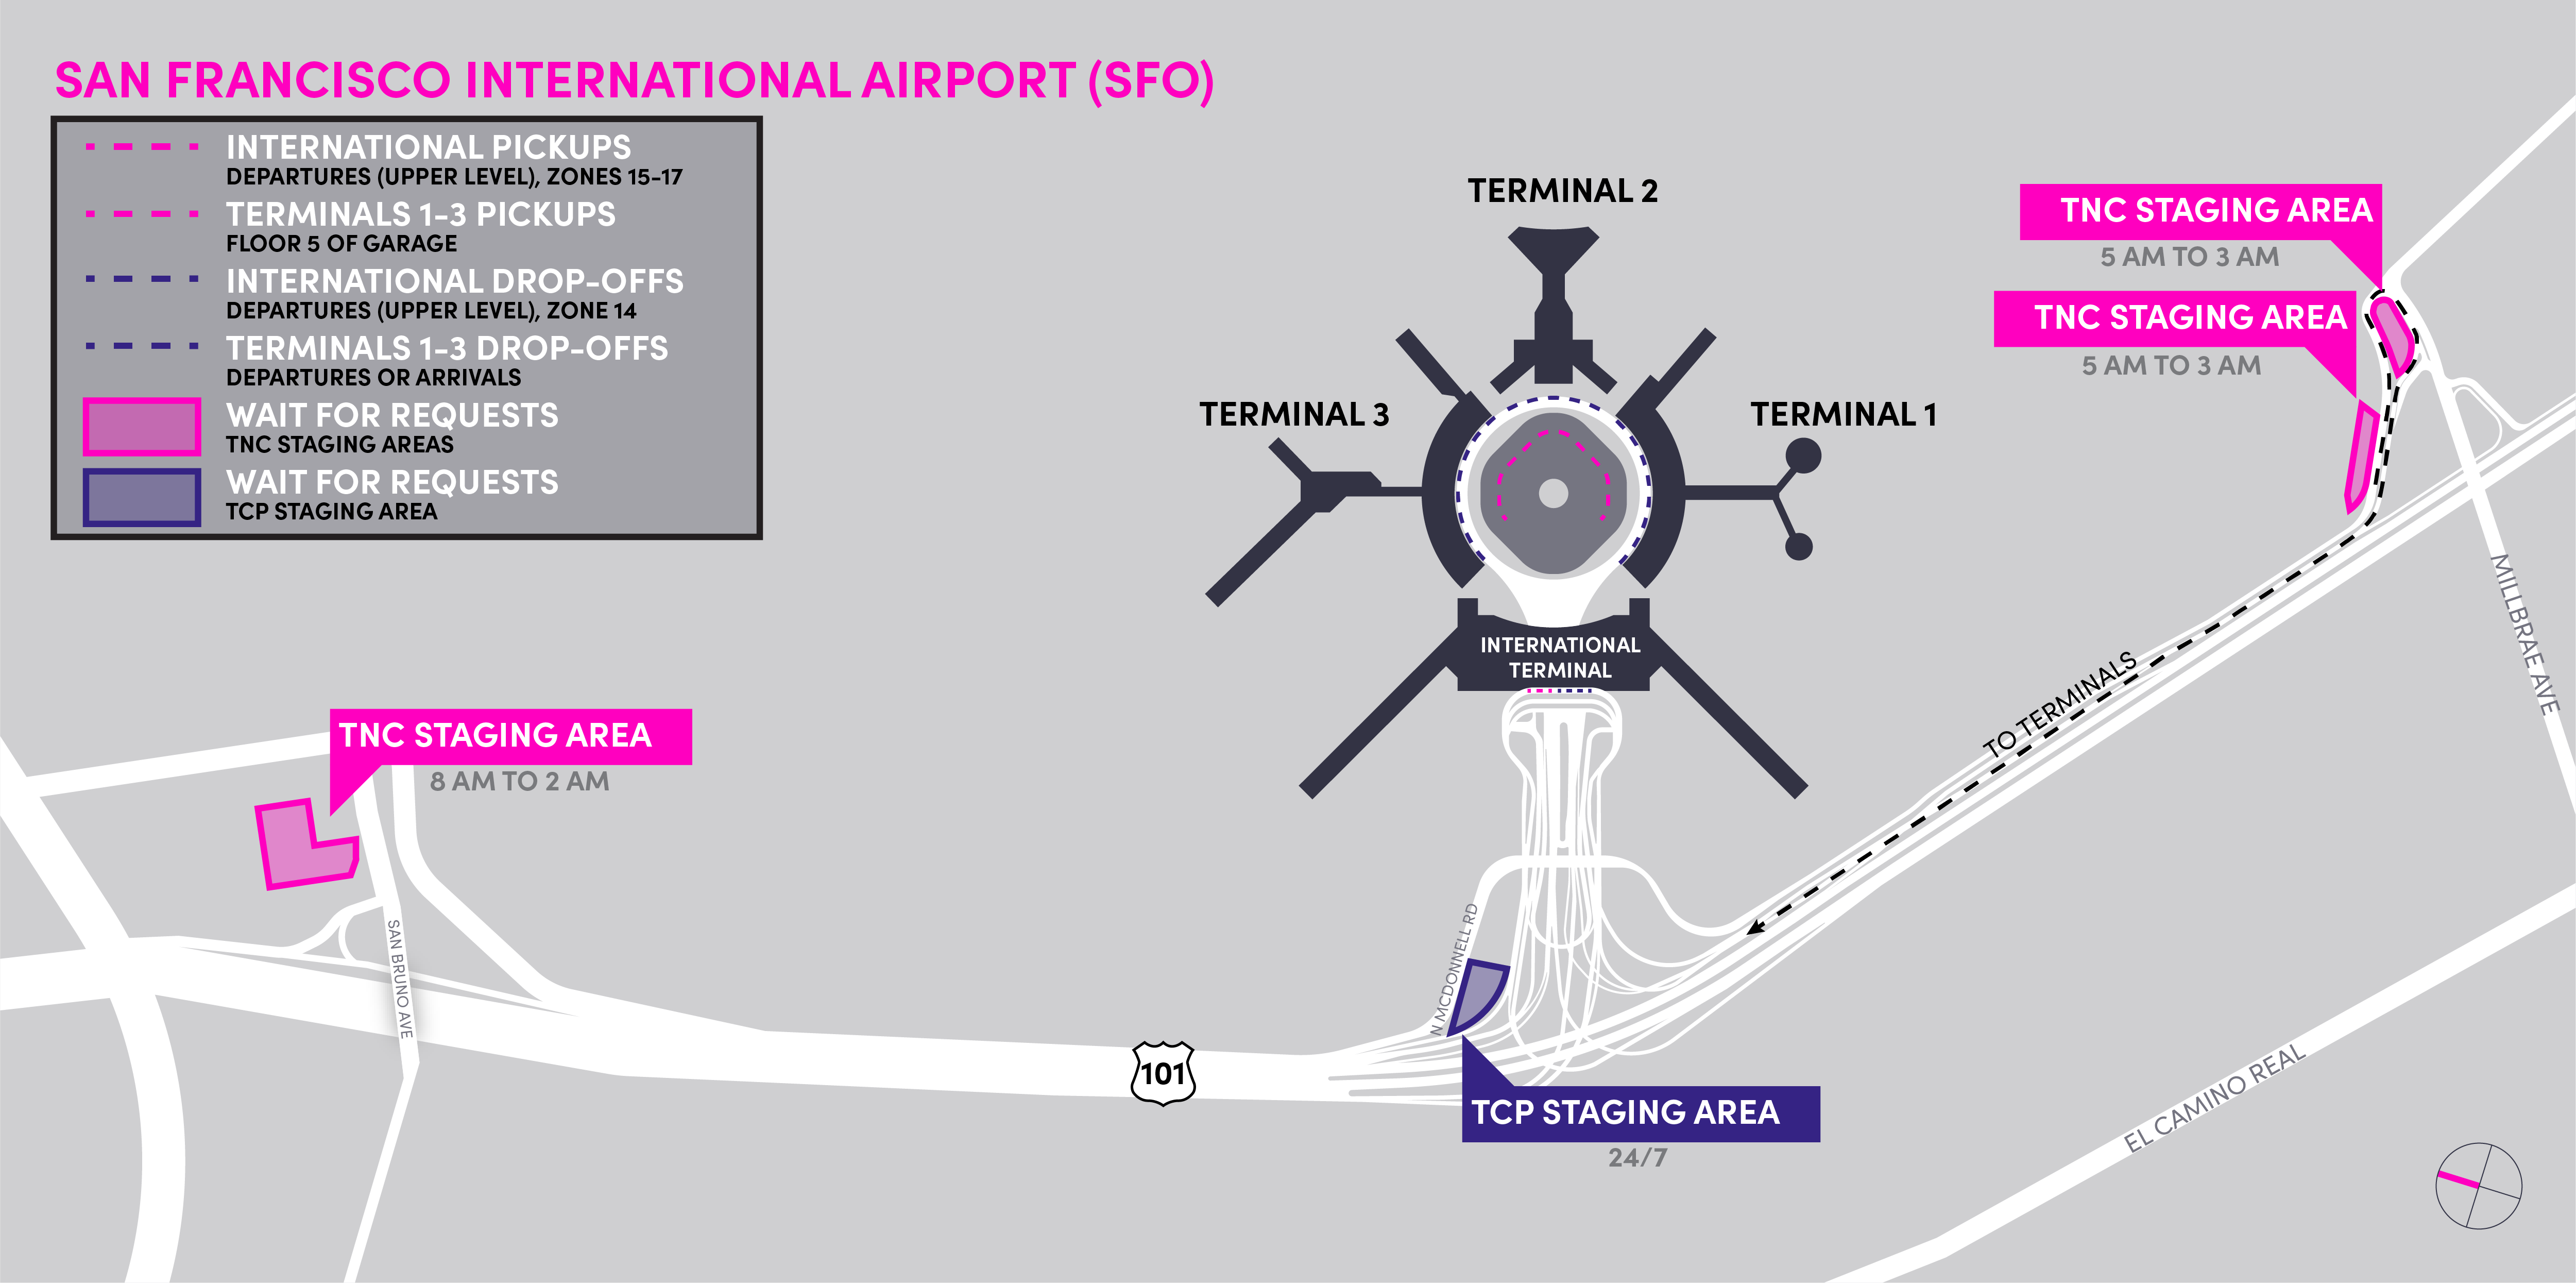 Carte des zones d'attente TNC et TCP à l'aéroport international de San Francisco